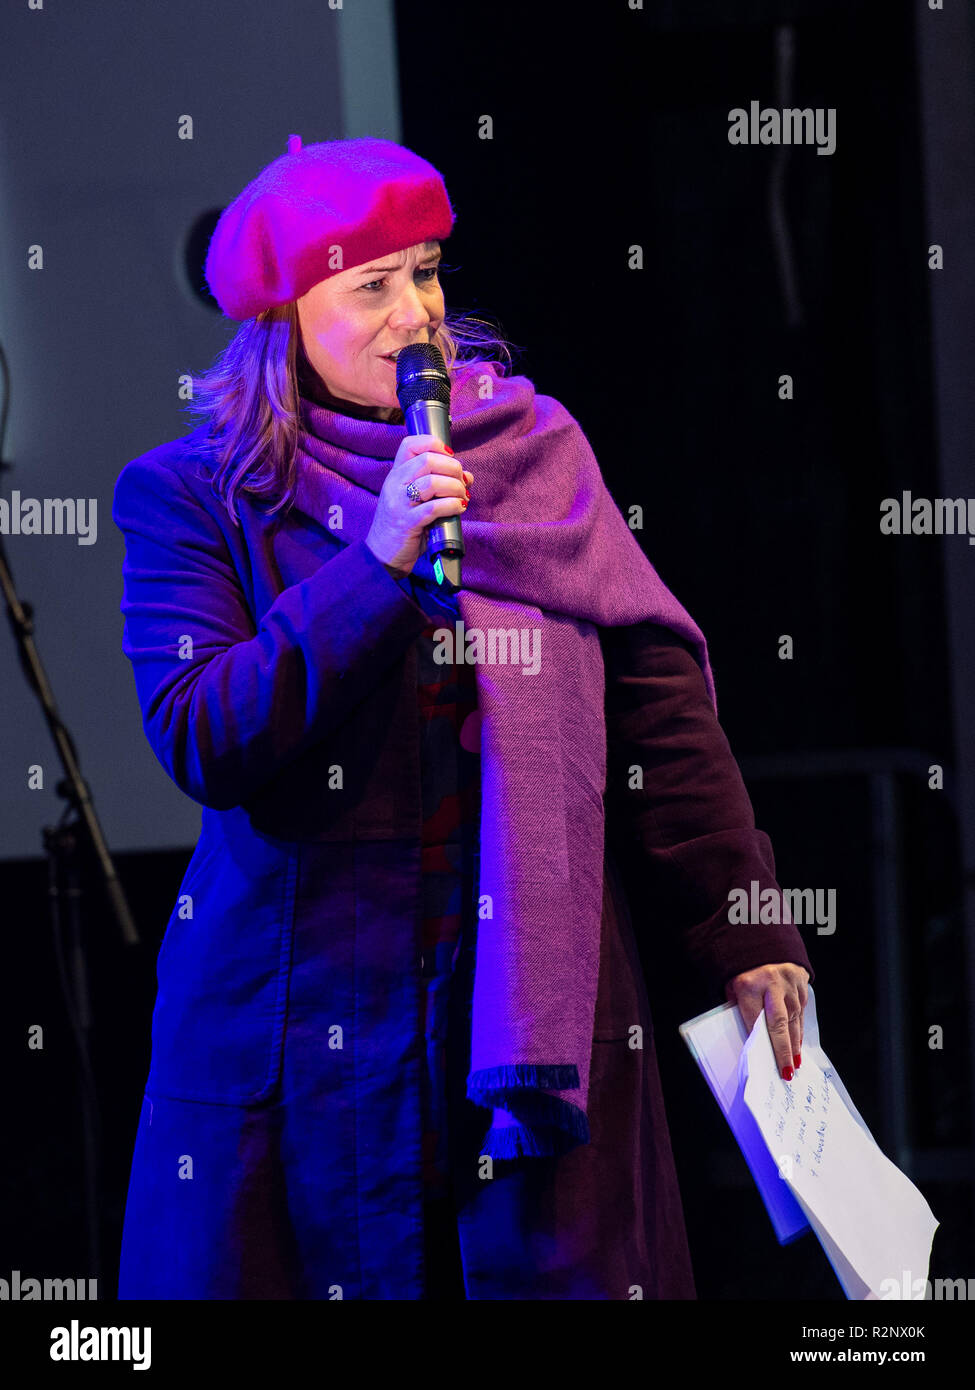 Luz de noche, un evento comunitario gratuito organizado por cuarta's Arlene Stuart el domingo, 18 de noviembre, marcó el inicio de la Navidad de Edimburgo 2018! Este Foto de stock